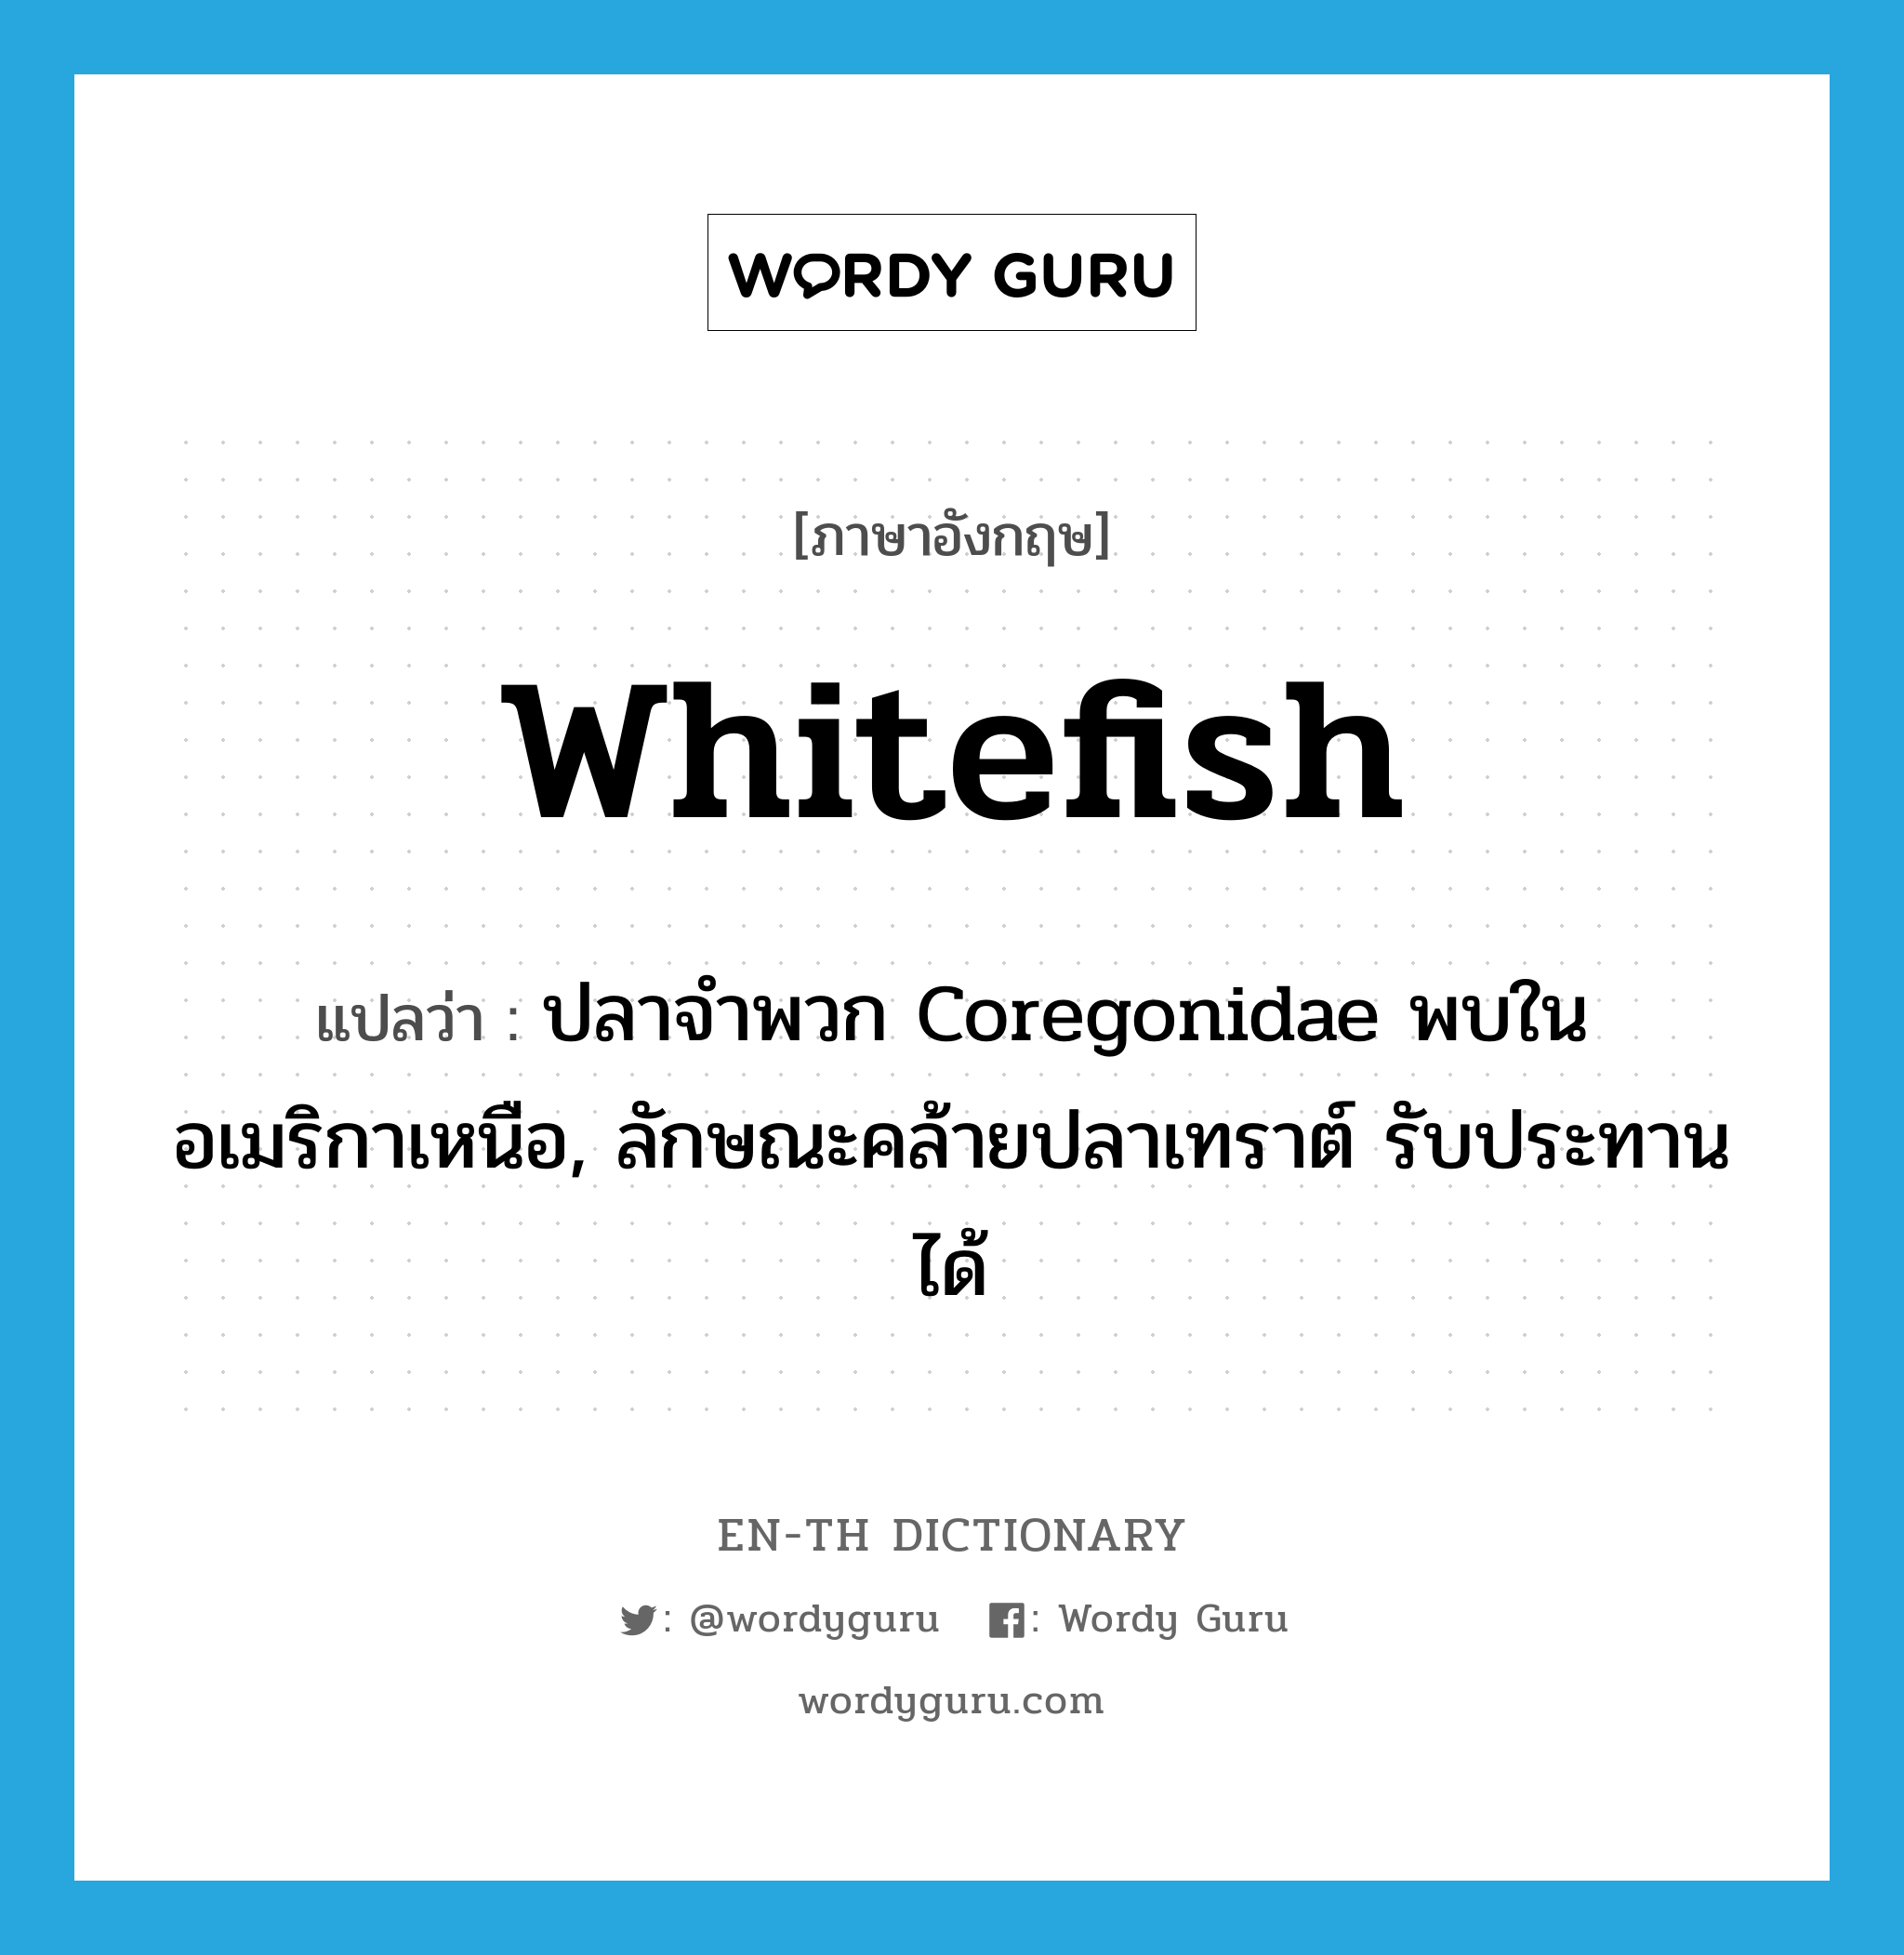 ปลาจำพวก Coregonidae พบในอเมริกาเหนือ, ลักษณะคล้ายปลาเทราต์ รับประทานได้ ภาษาอังกฤษ?, คำศัพท์ภาษาอังกฤษ ปลาจำพวก Coregonidae พบในอเมริกาเหนือ, ลักษณะคล้ายปลาเทราต์ รับประทานได้ แปลว่า whitefish ประเภท N หมวด N